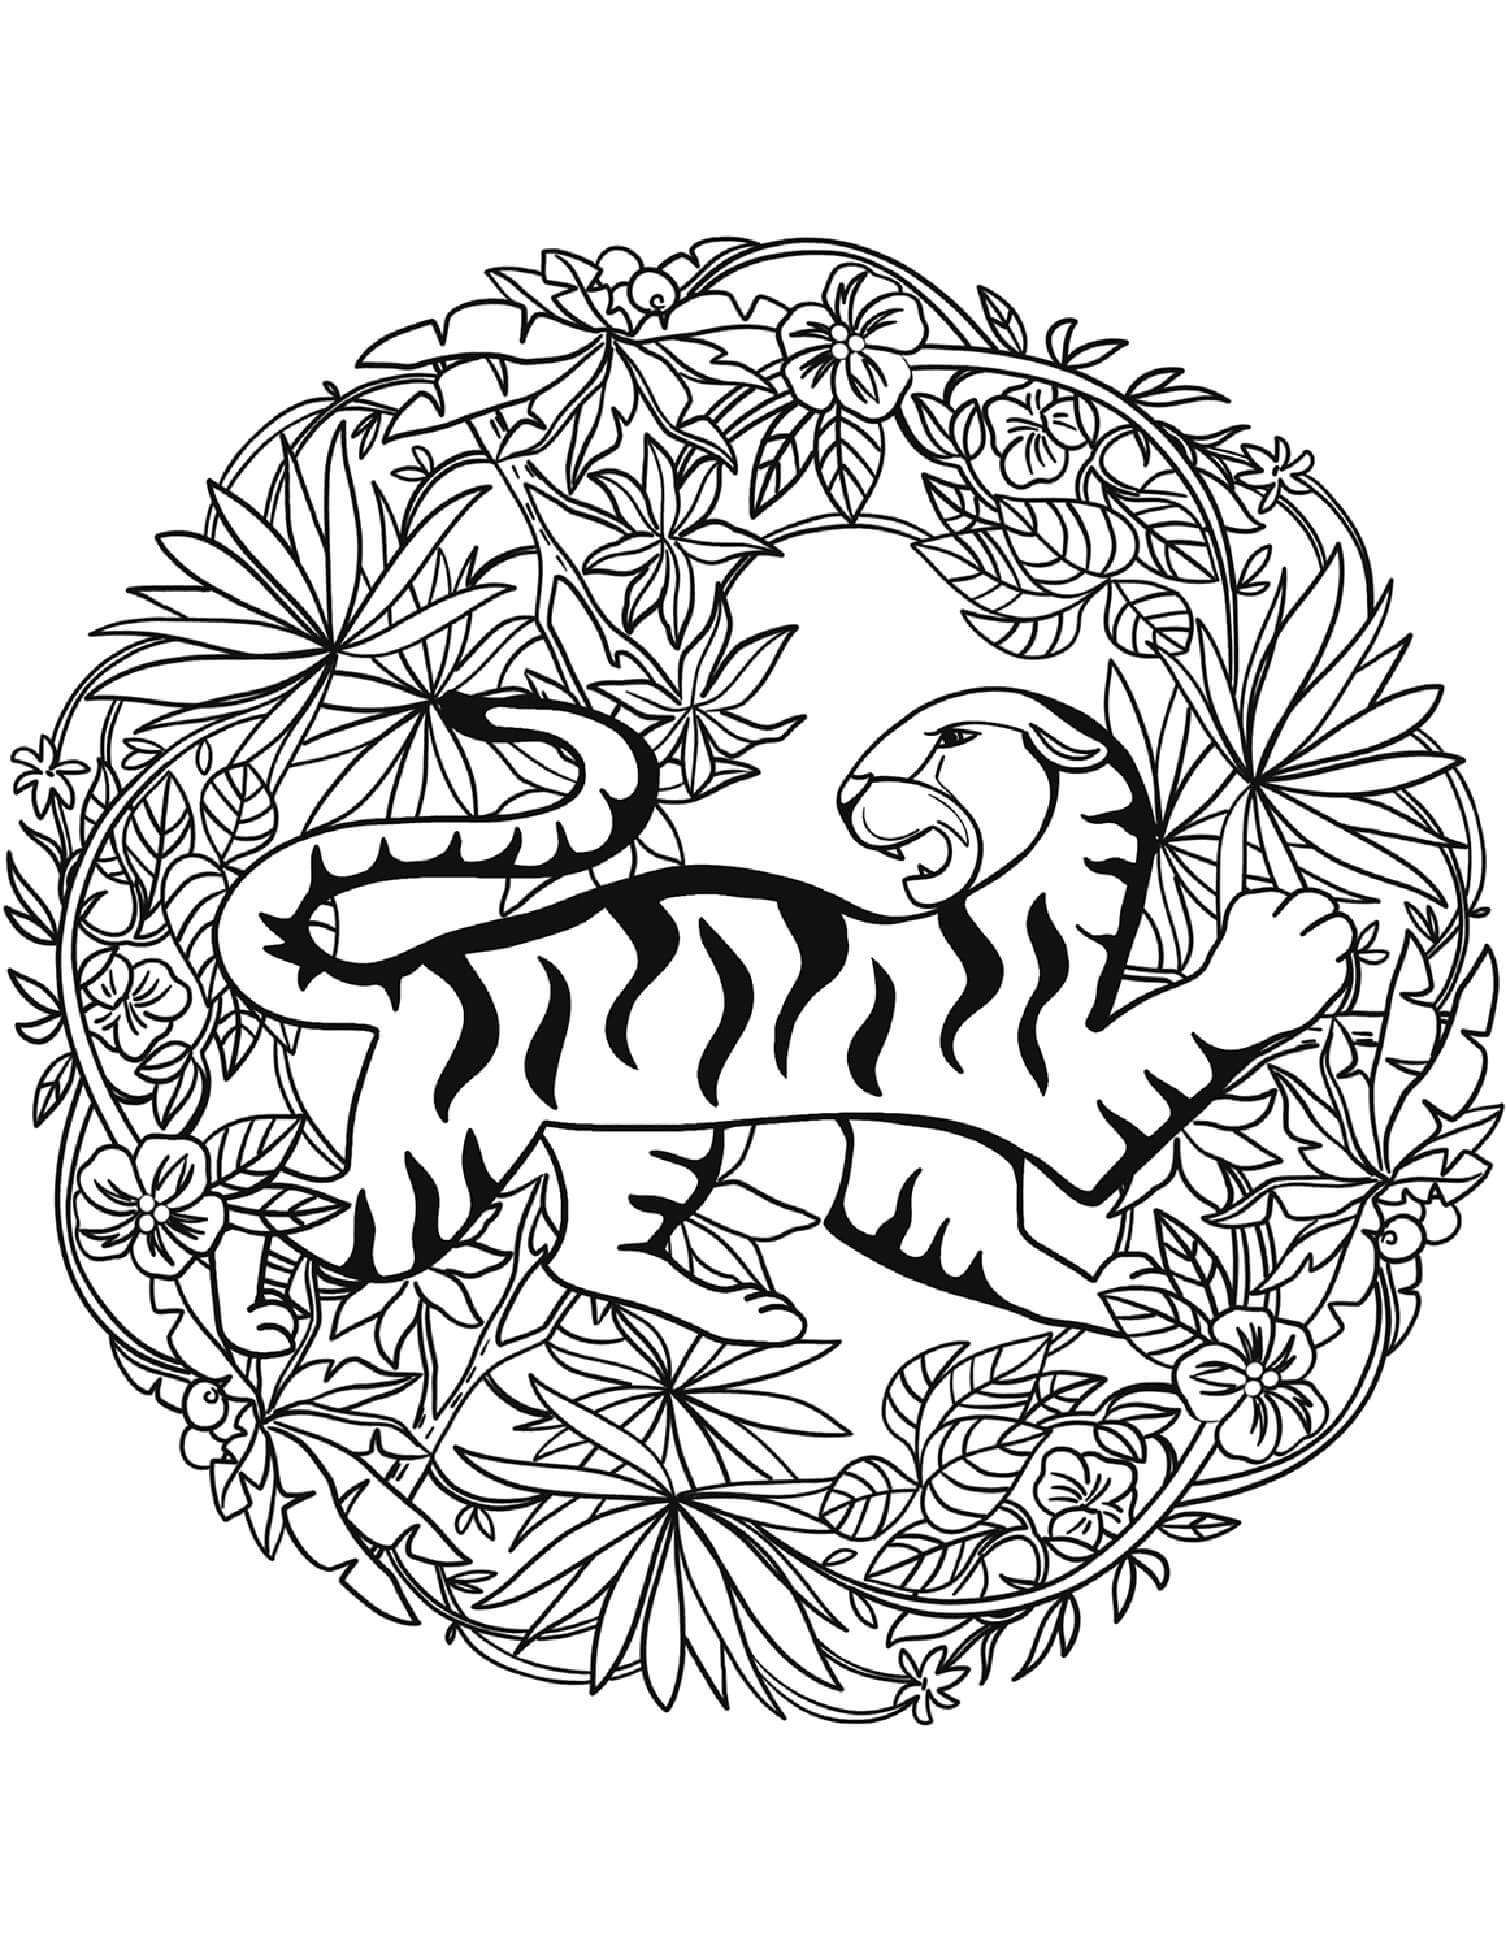 Mandala Tiger With Leaves Coloring Page Mandalas